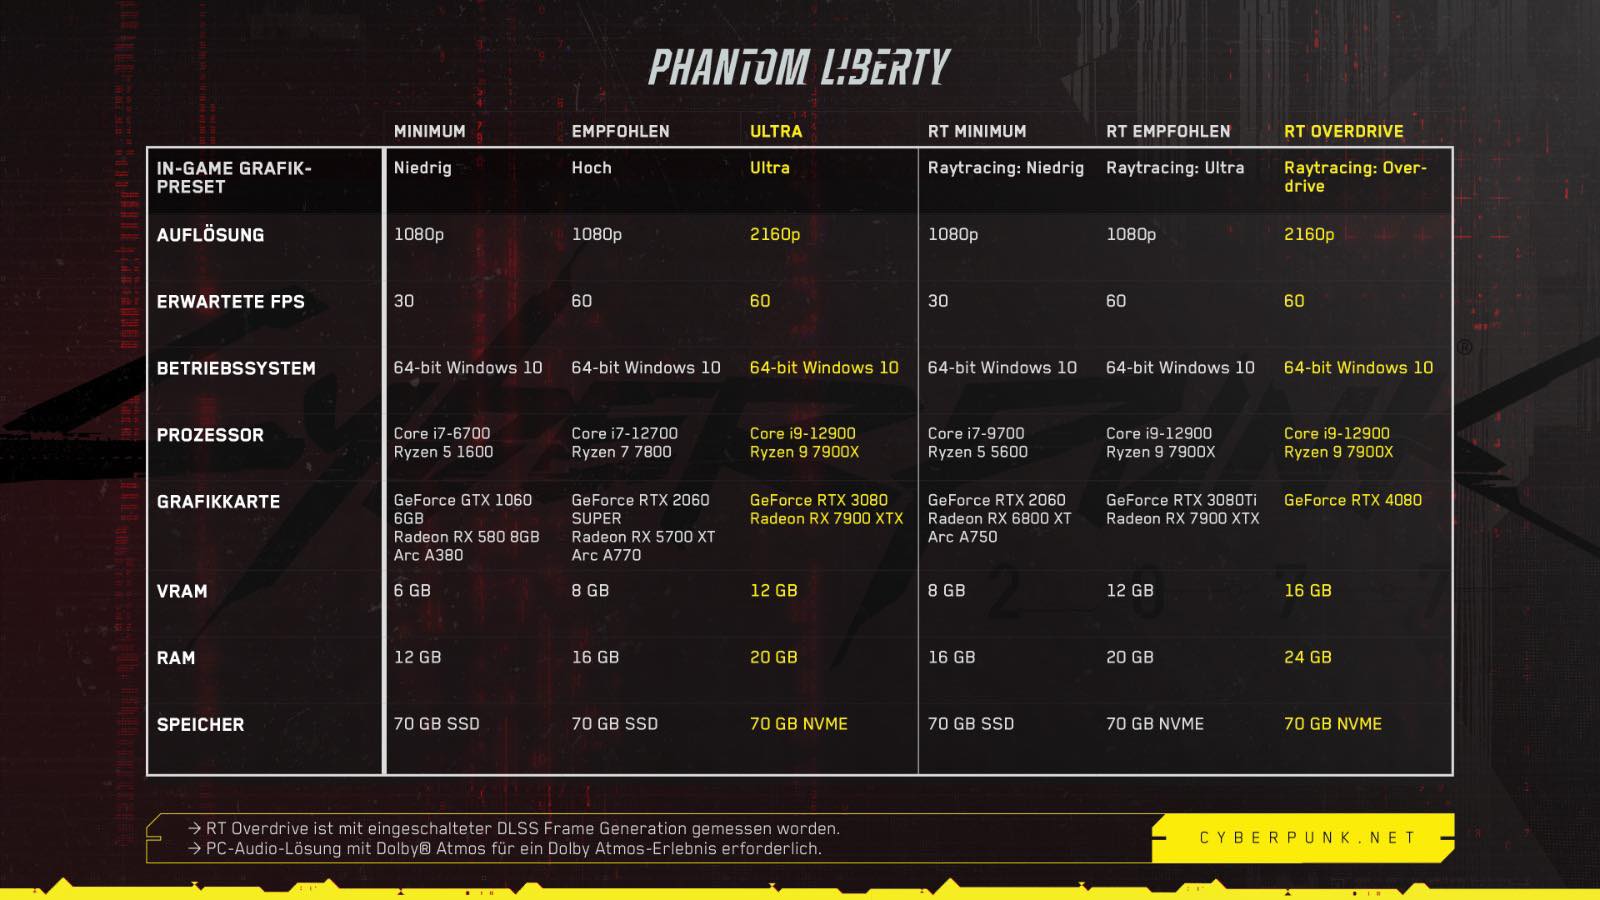 Cyberpunk-2077-Phantom-Liberty-Systemanforderungen-pcgh.jpg